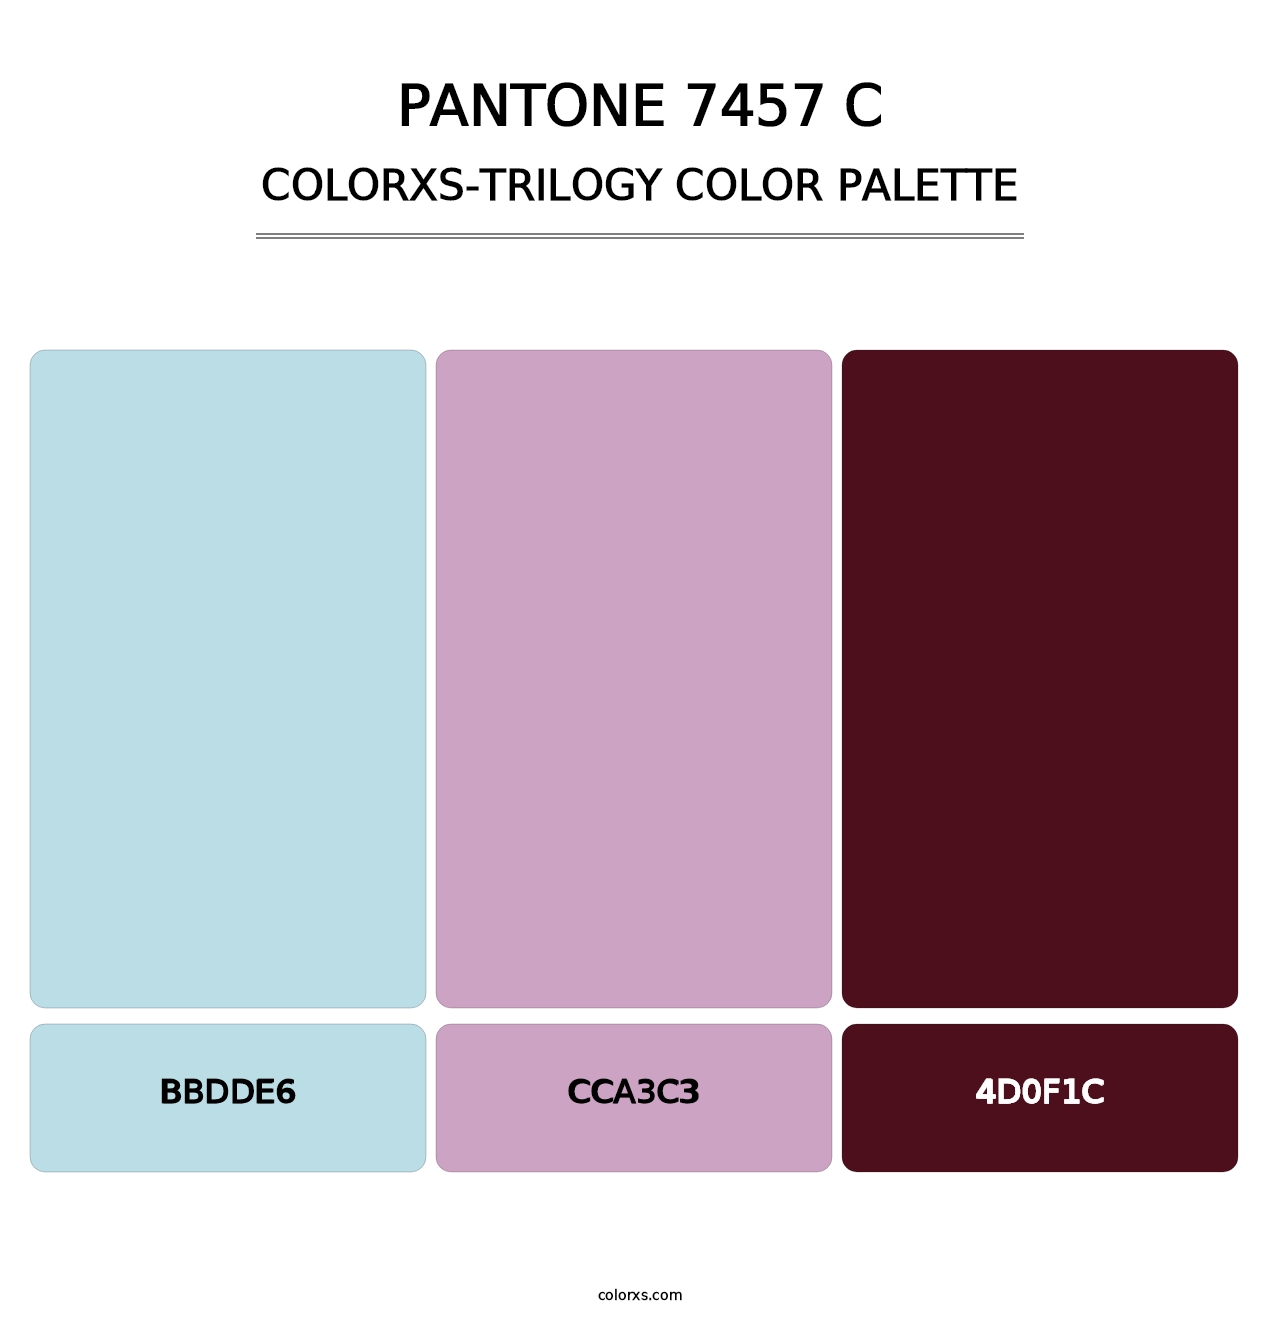 PANTONE 7457 C - Colorxs Trilogy Palette